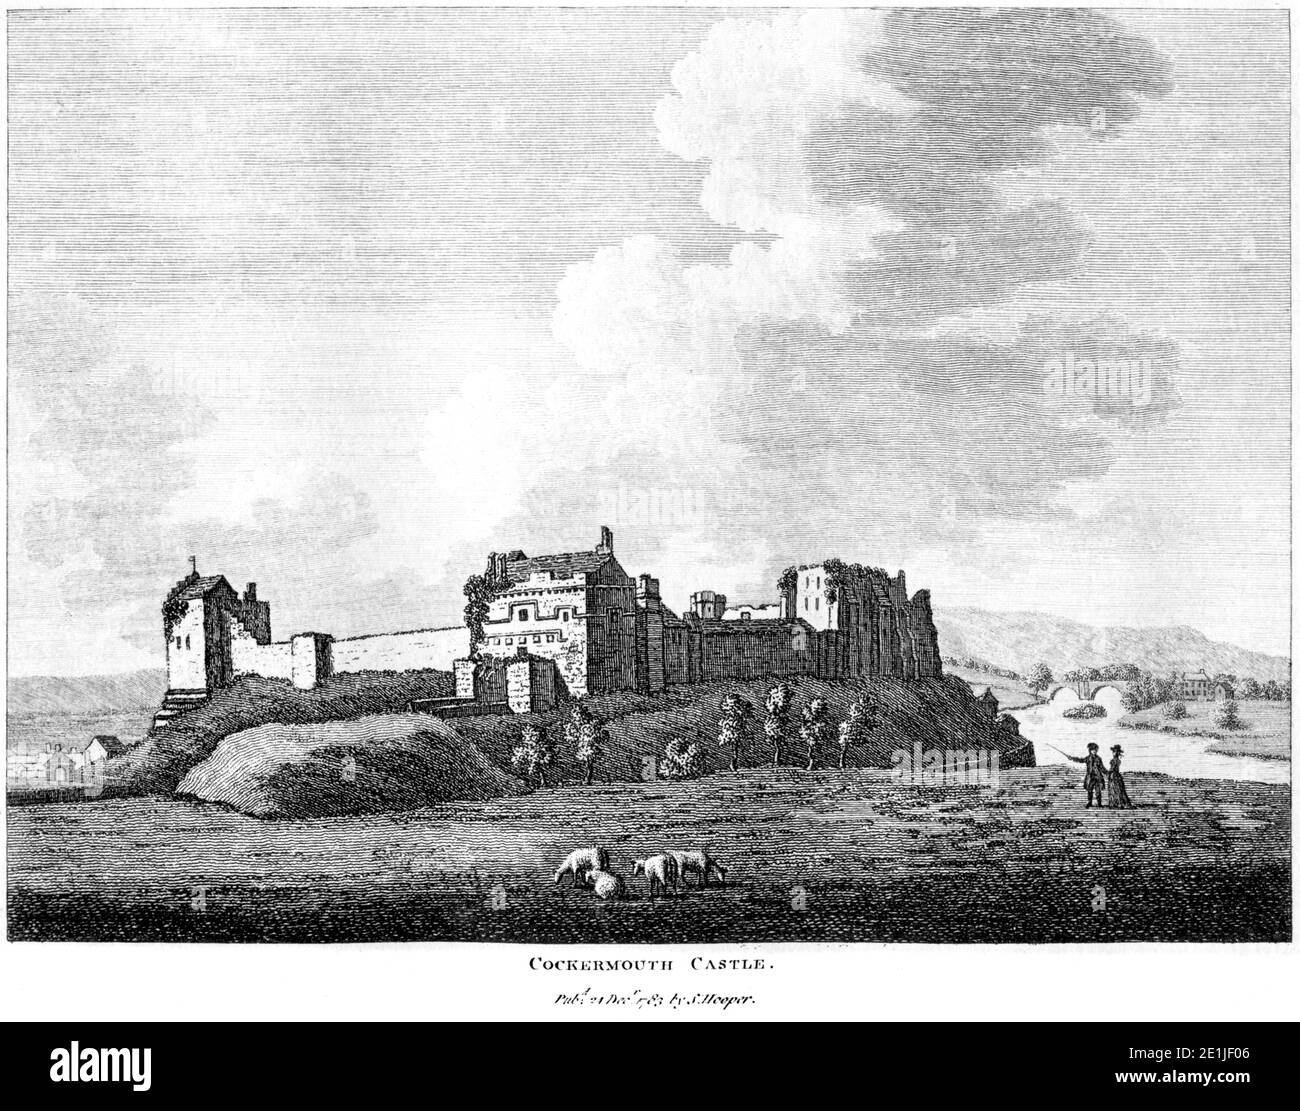 Ein Stich von Cockermouth Castle veröffentlicht am 24. Dezember 1783 gescannt in hoher Auflösung aus einem Buch in den 1780er Jahren veröffentlicht. Dieses Bild wird geglaubt, um Stockfoto